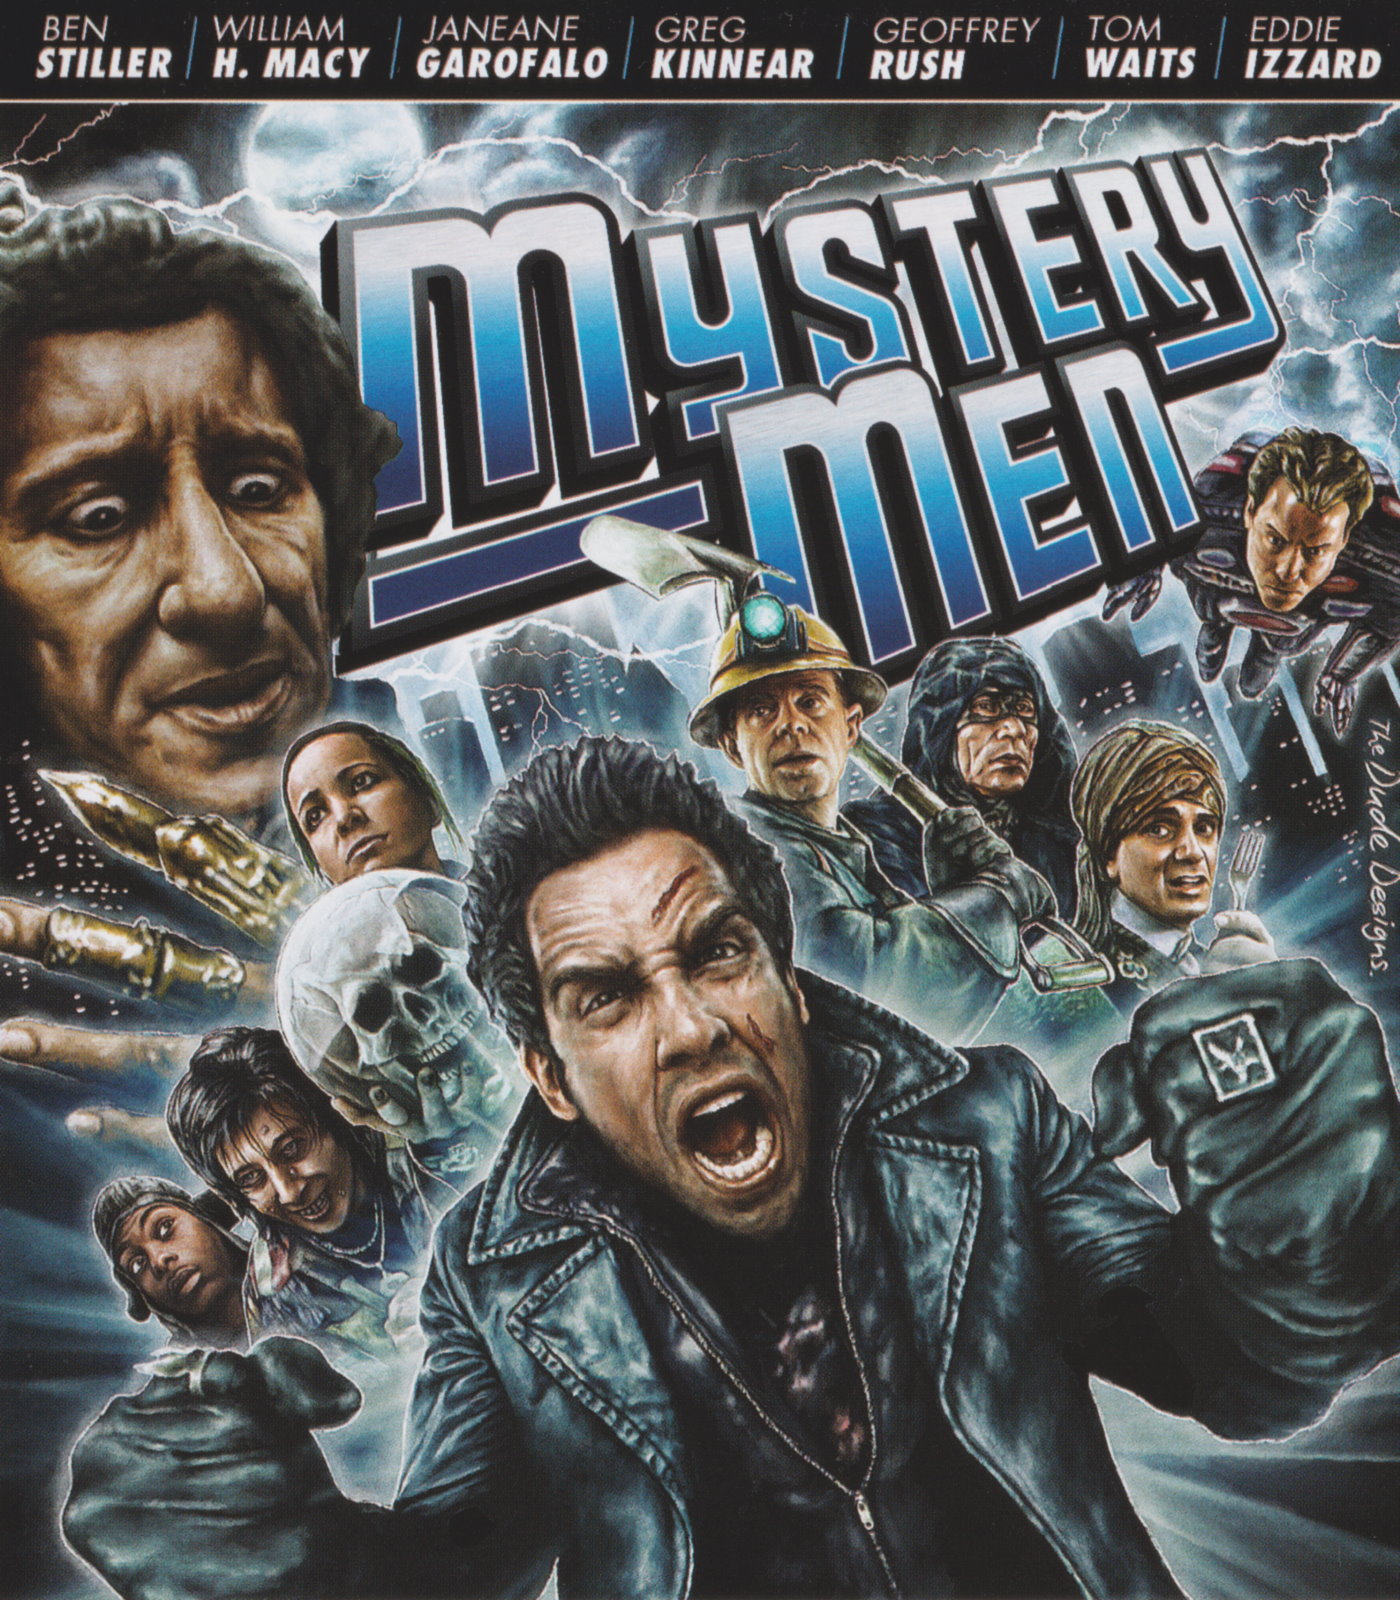 Cover - Mystery Men.jpg